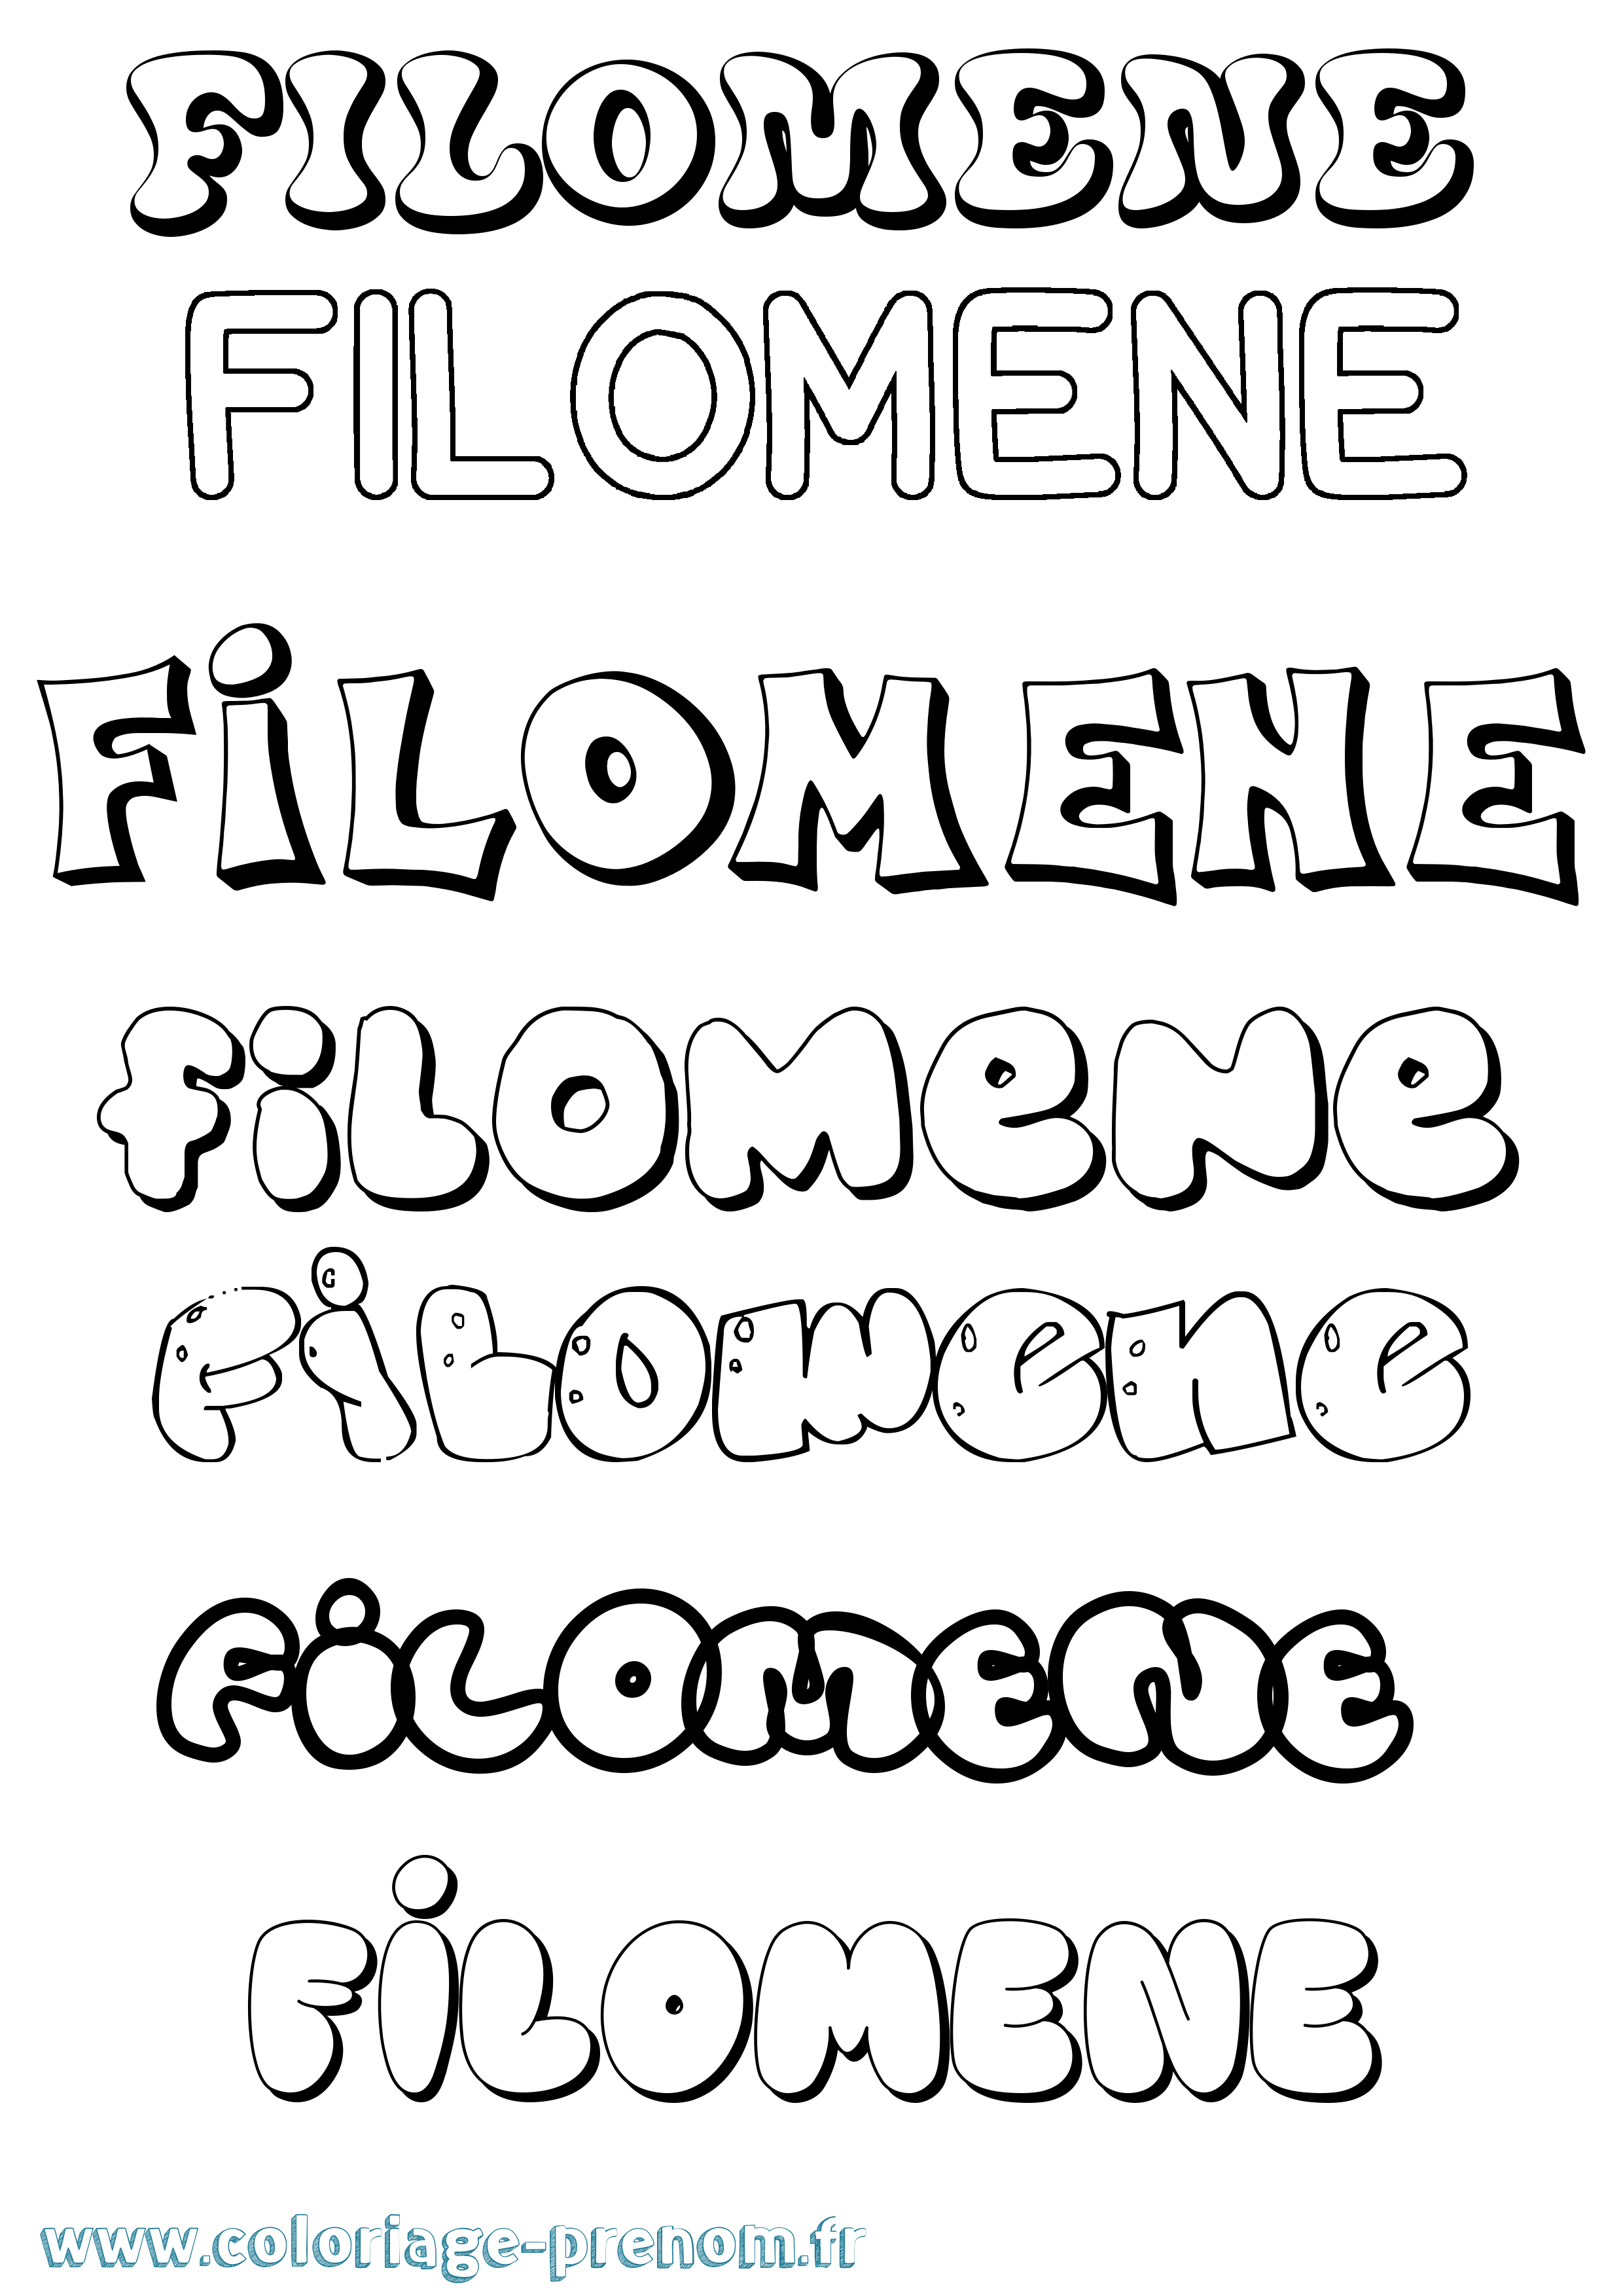 Coloriage prénom Filomene Bubble